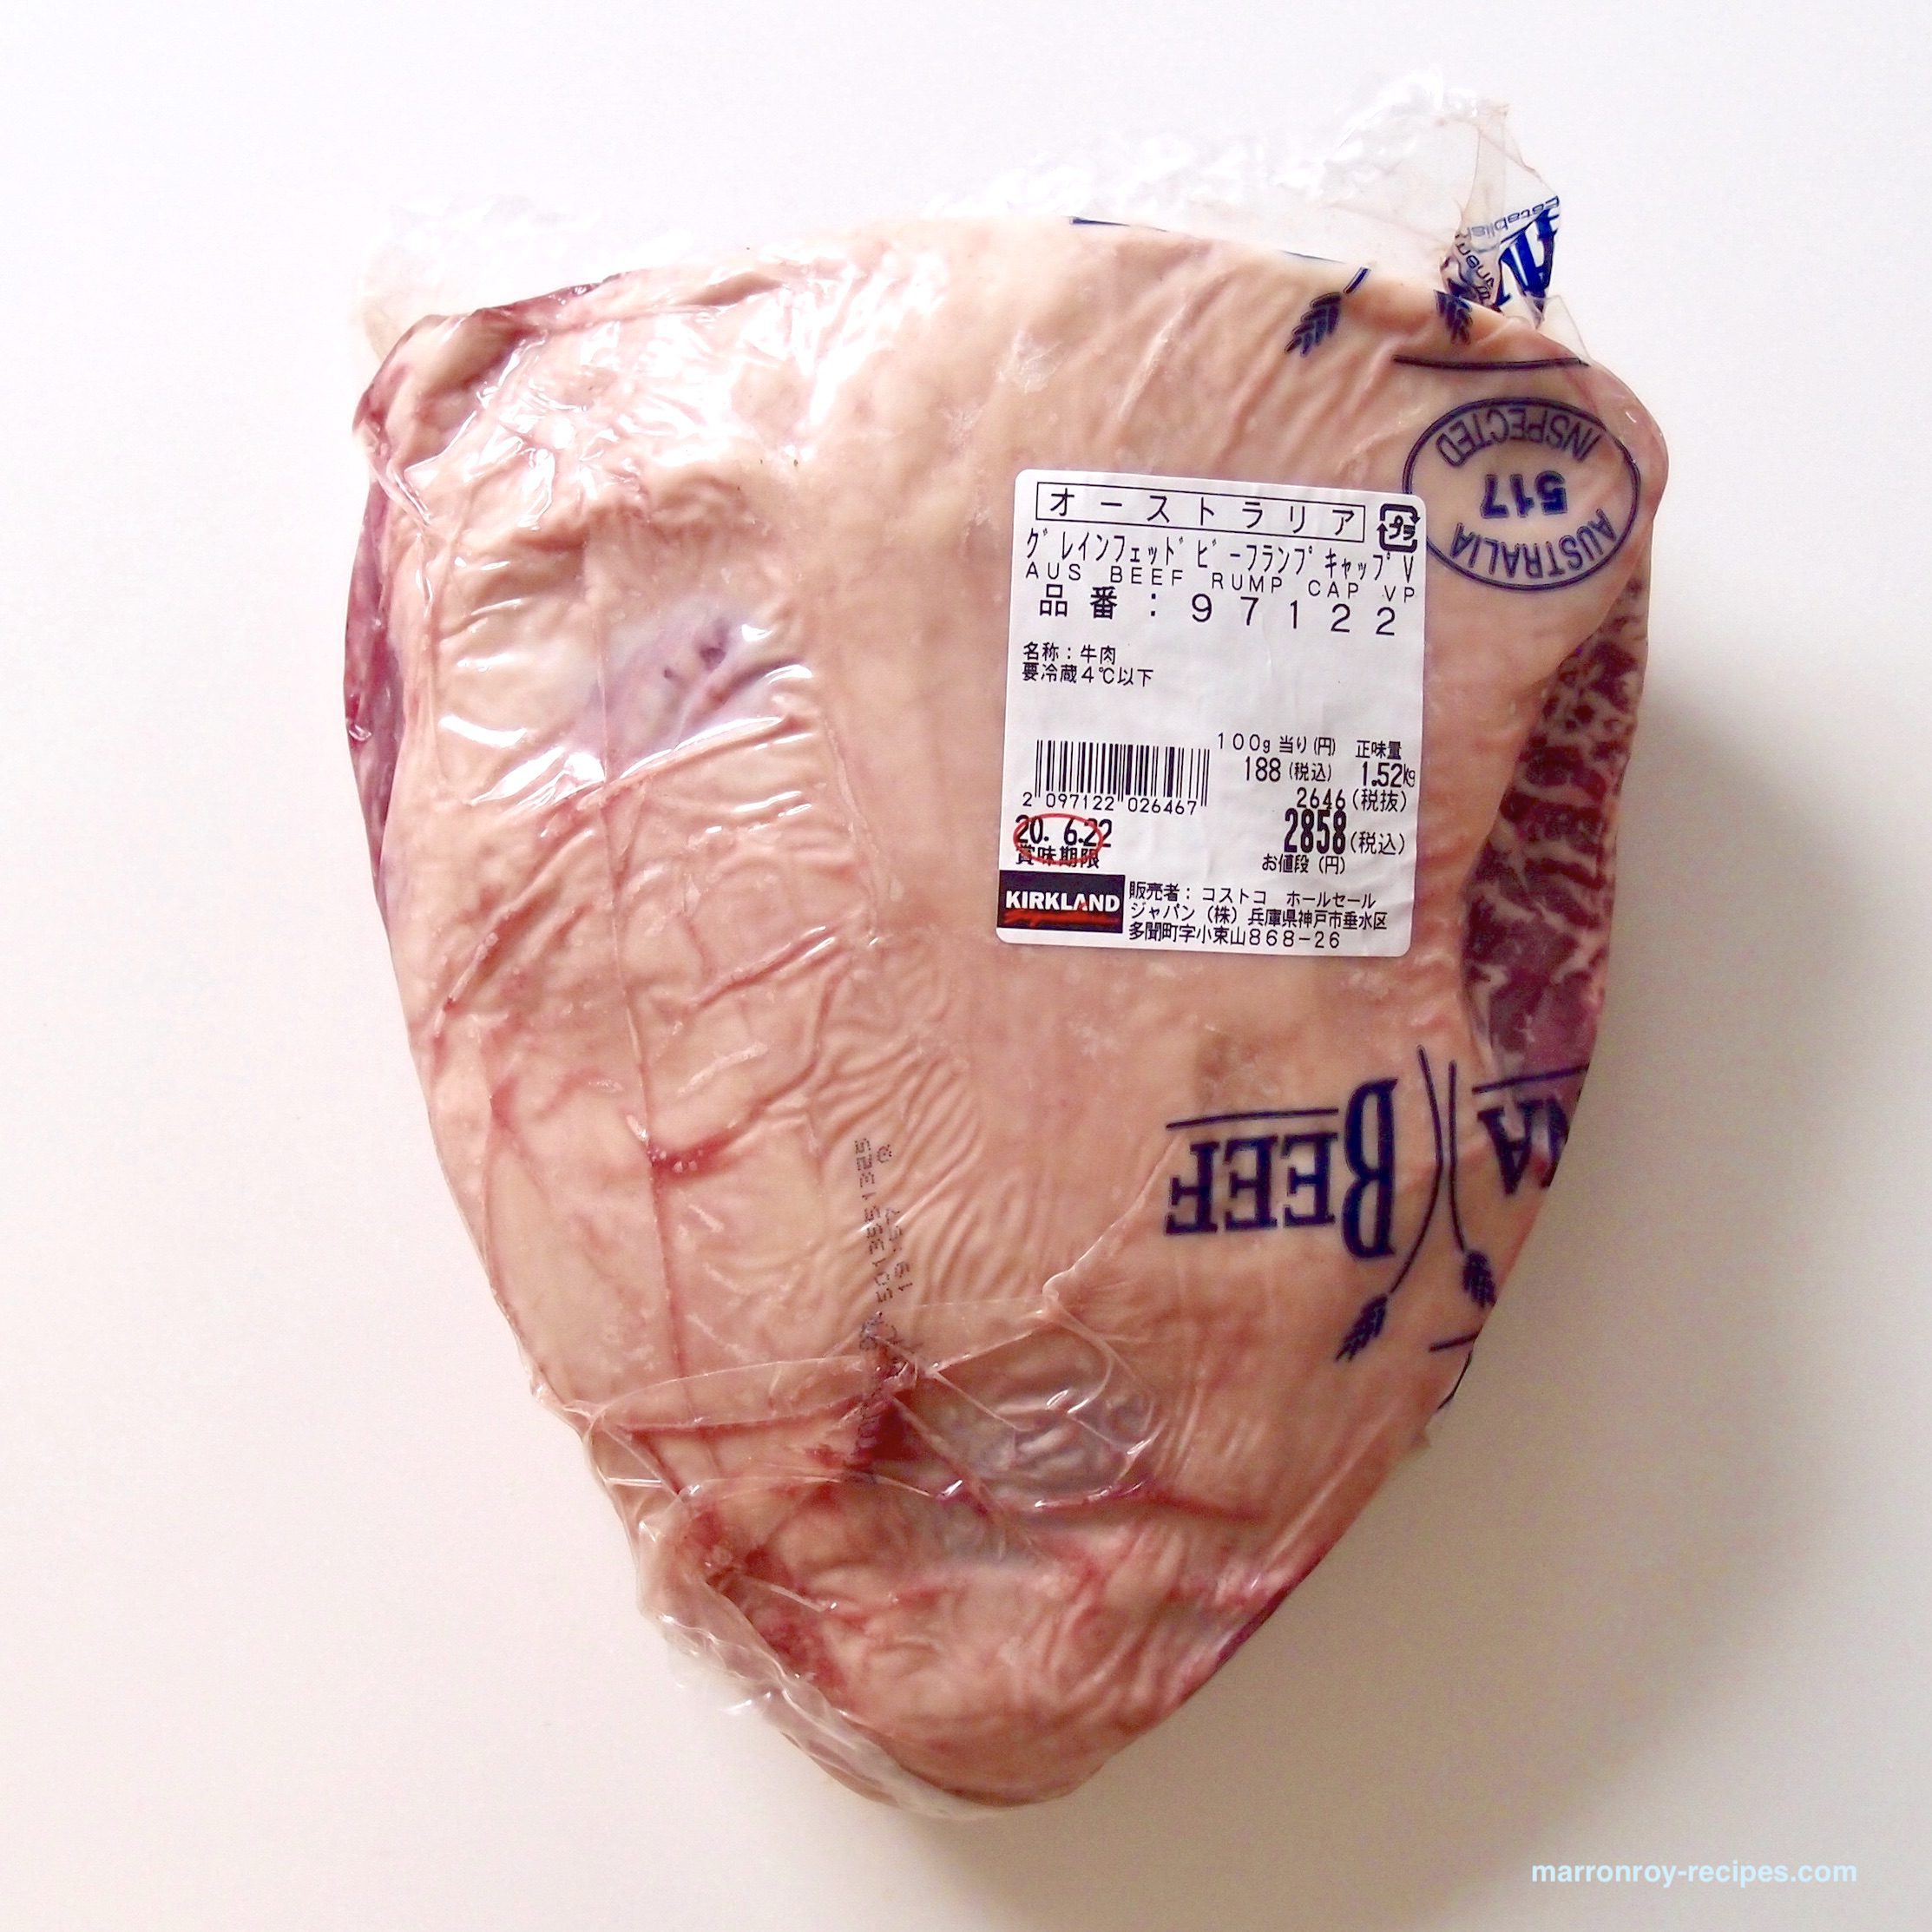 コストコで買ったブロック肉を調理！“オーストラリア産 グレインフェッドビーフ ランプキャップ VP”